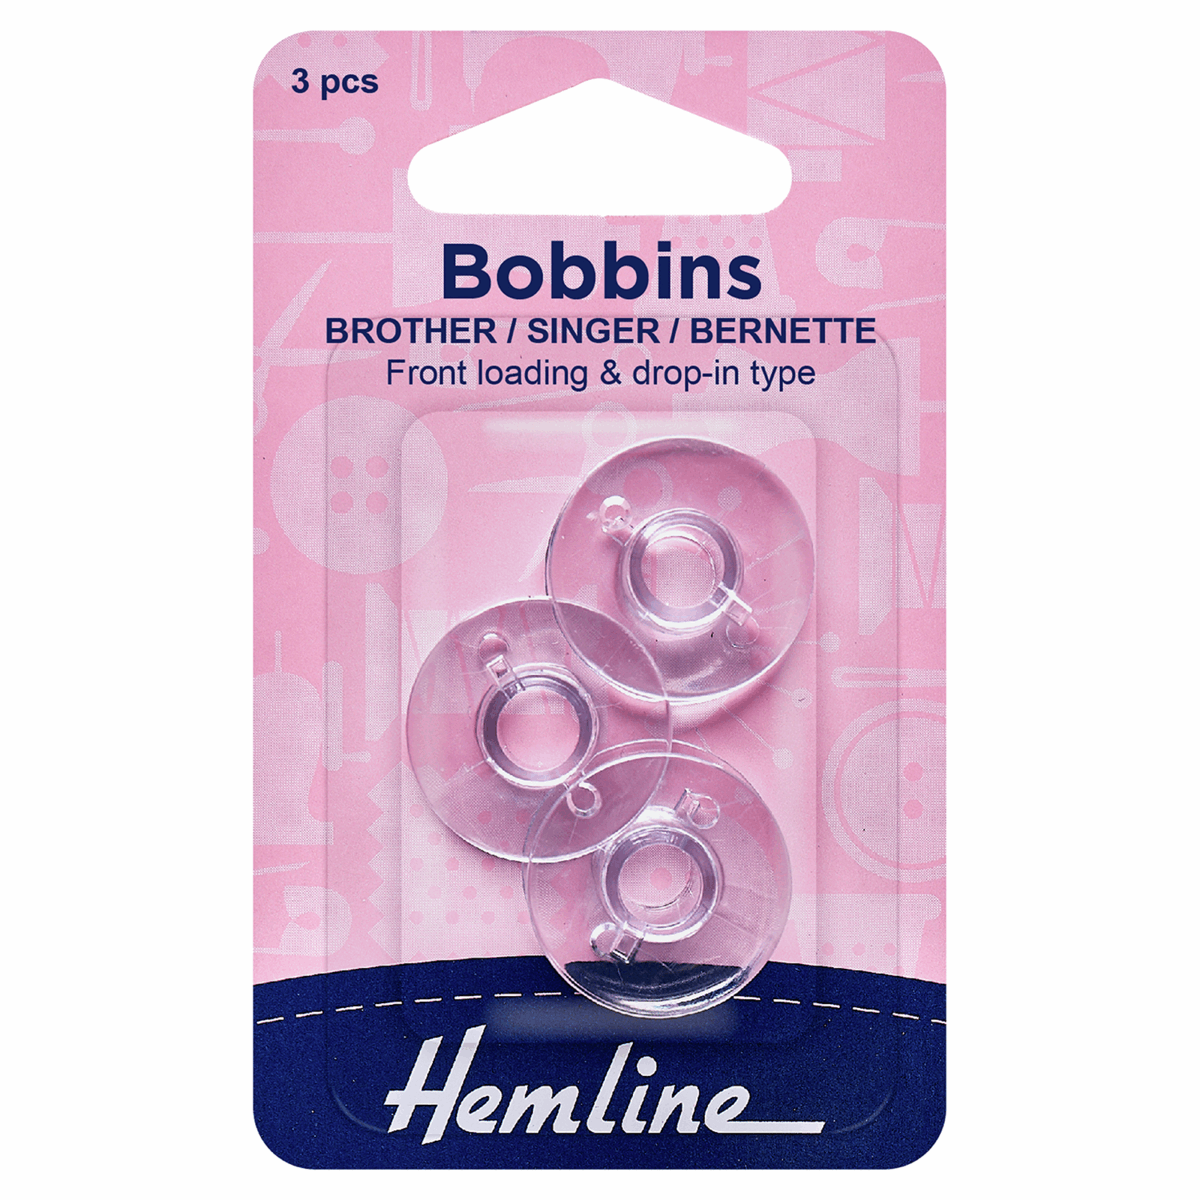 Plastic Bobbins - Vertical Load BROTHER / SINGER / BERNETTE